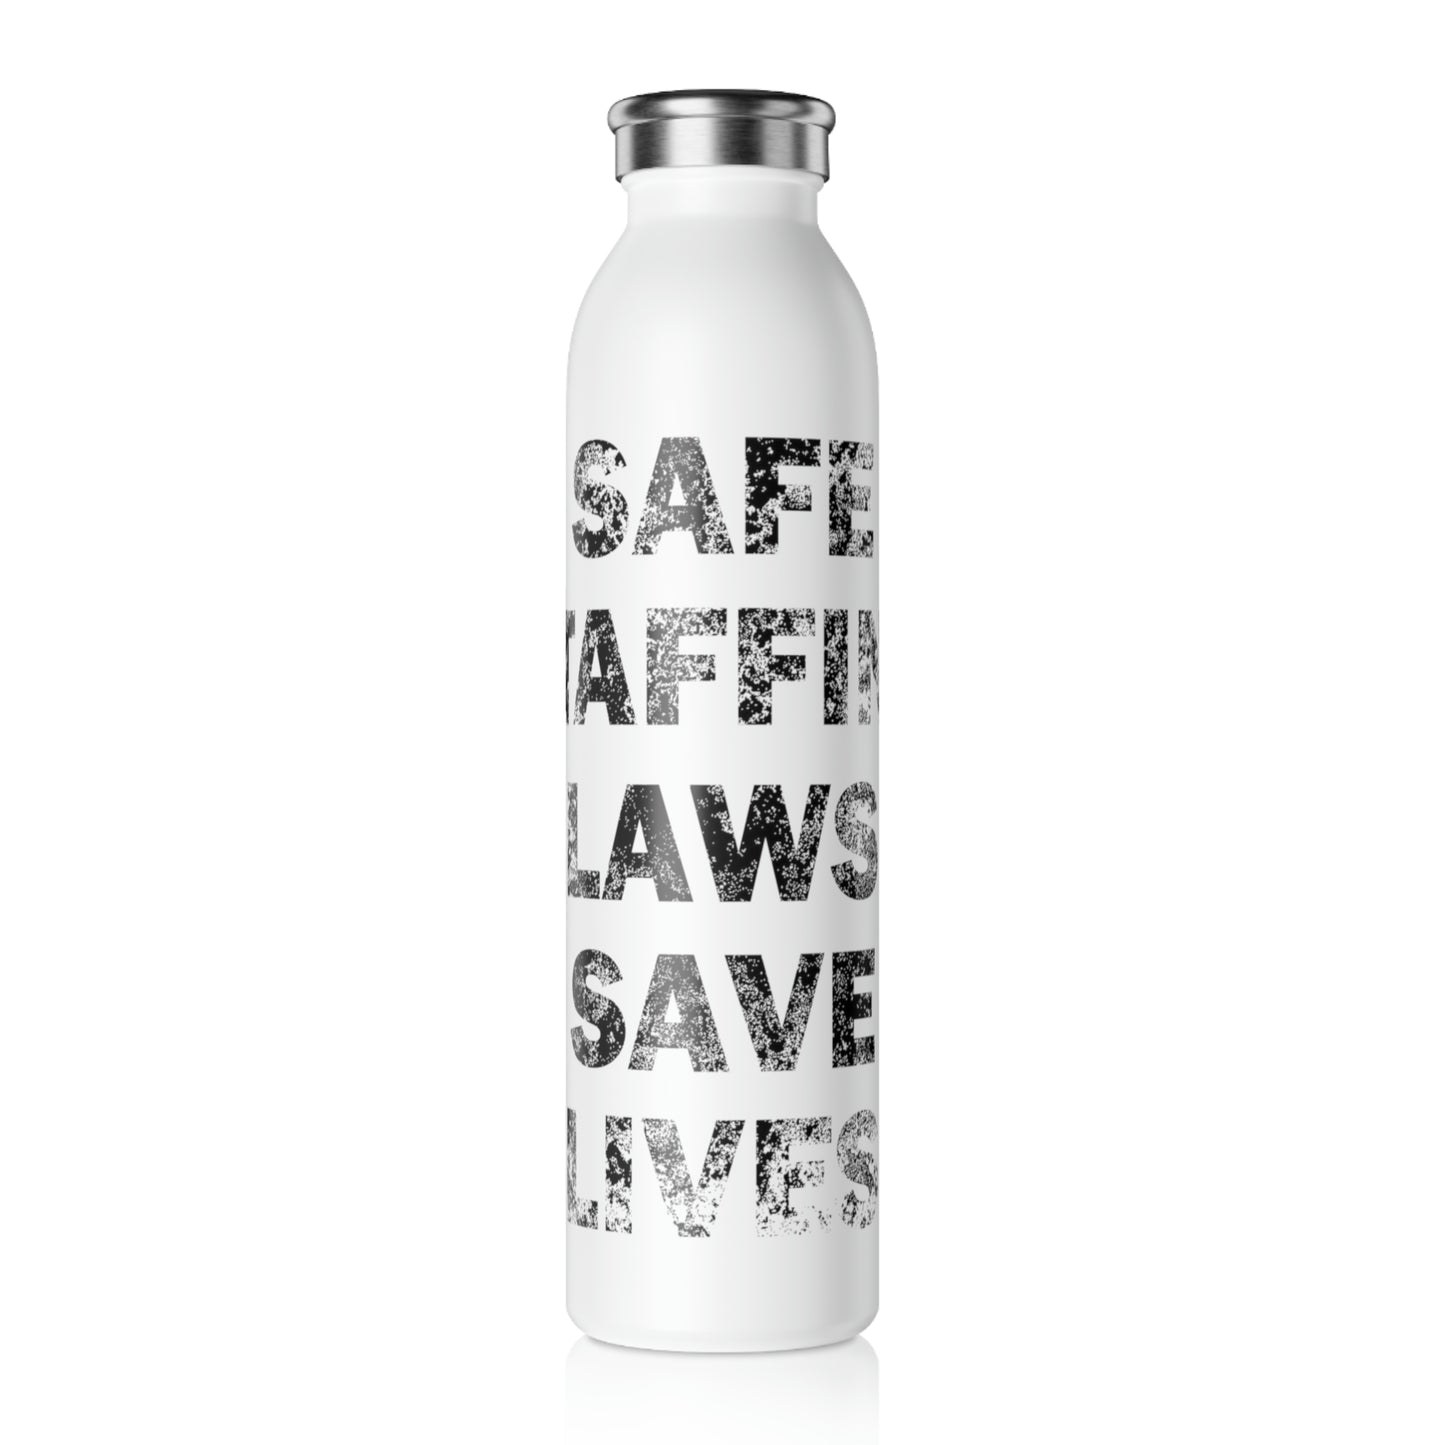 Safe Staffing Laws Save Lives